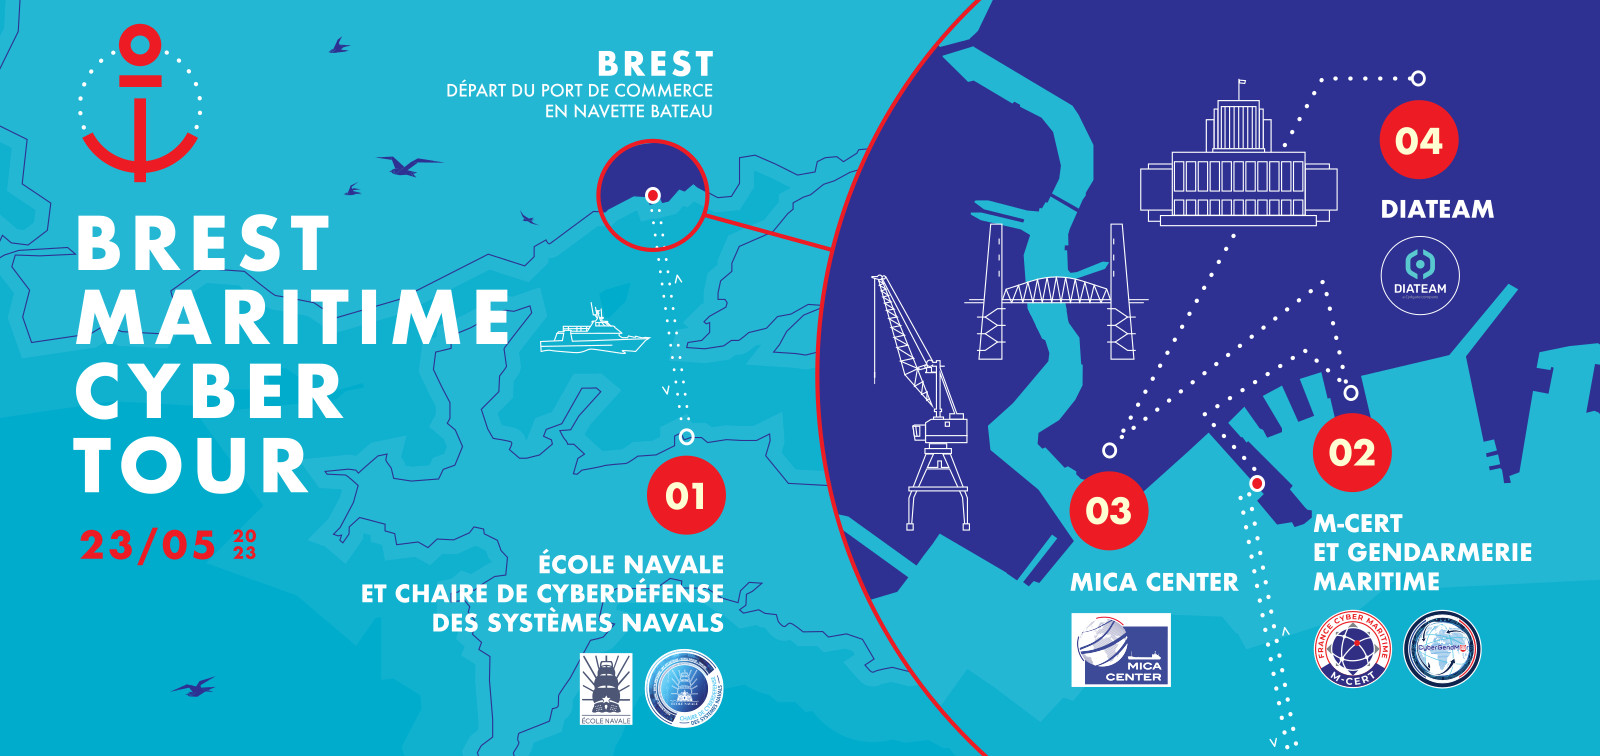 DIATEAM sera une étape du Brest Maritime Cyber Tour le 23 mai